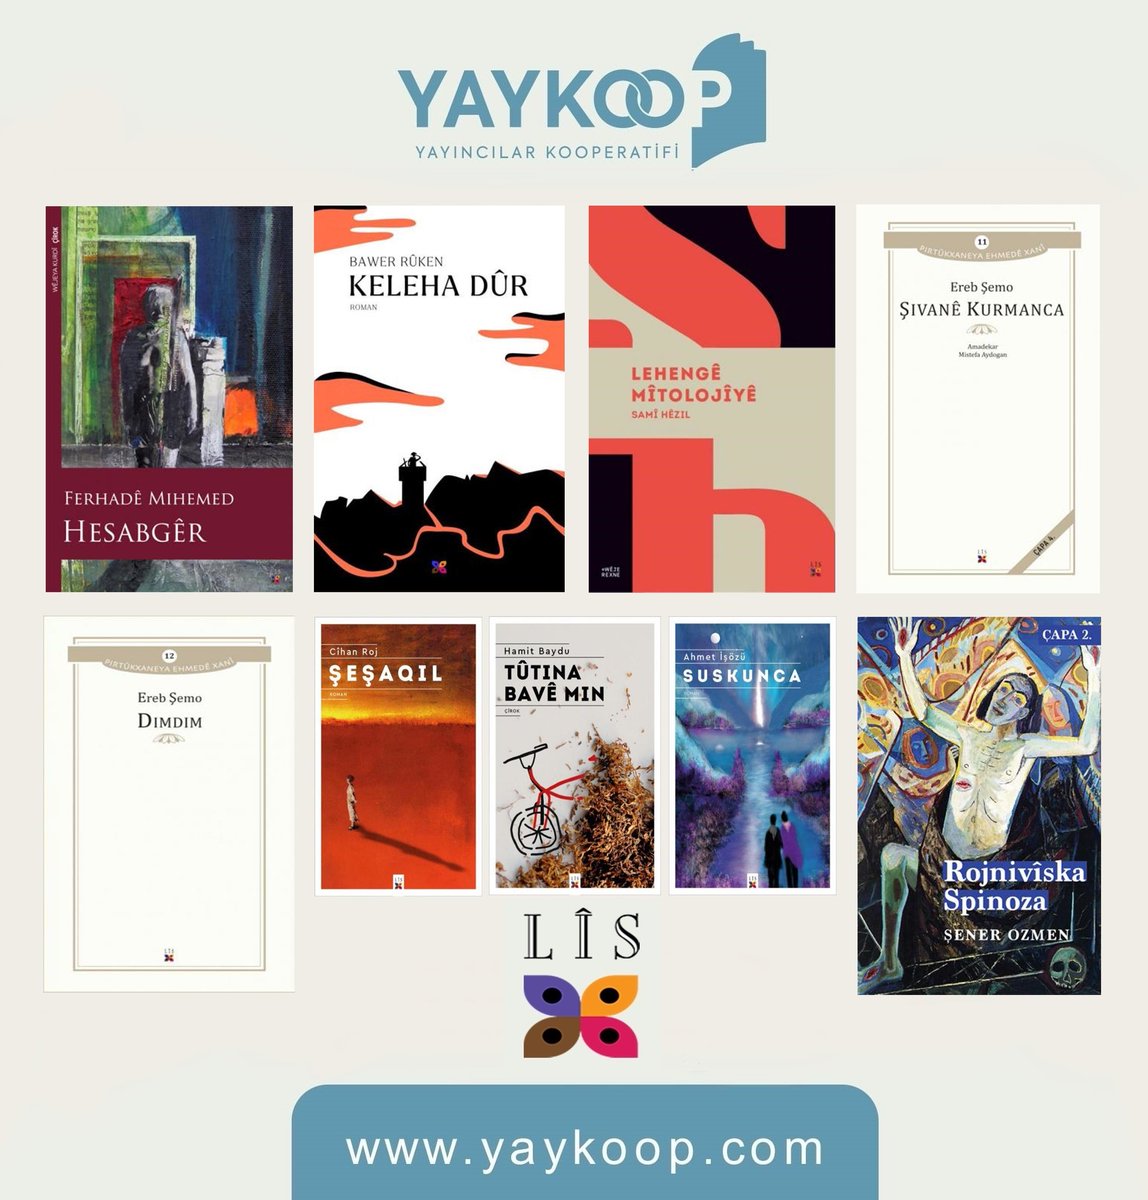 Kürtçe edebiyatın görünürlüğünü sağlamak ve dilin gelişimine katkıda bulunmak amacıyla yayımladığı eserlerle okurla buluşan Lîs Yayınevi'nin bütün kitaplarını ay boyunca yaykoop.com'dan %40 indirimle edinebilirsiniz! yaykoop.com/lis-yayinevi @lisyayinevi #yaykoop